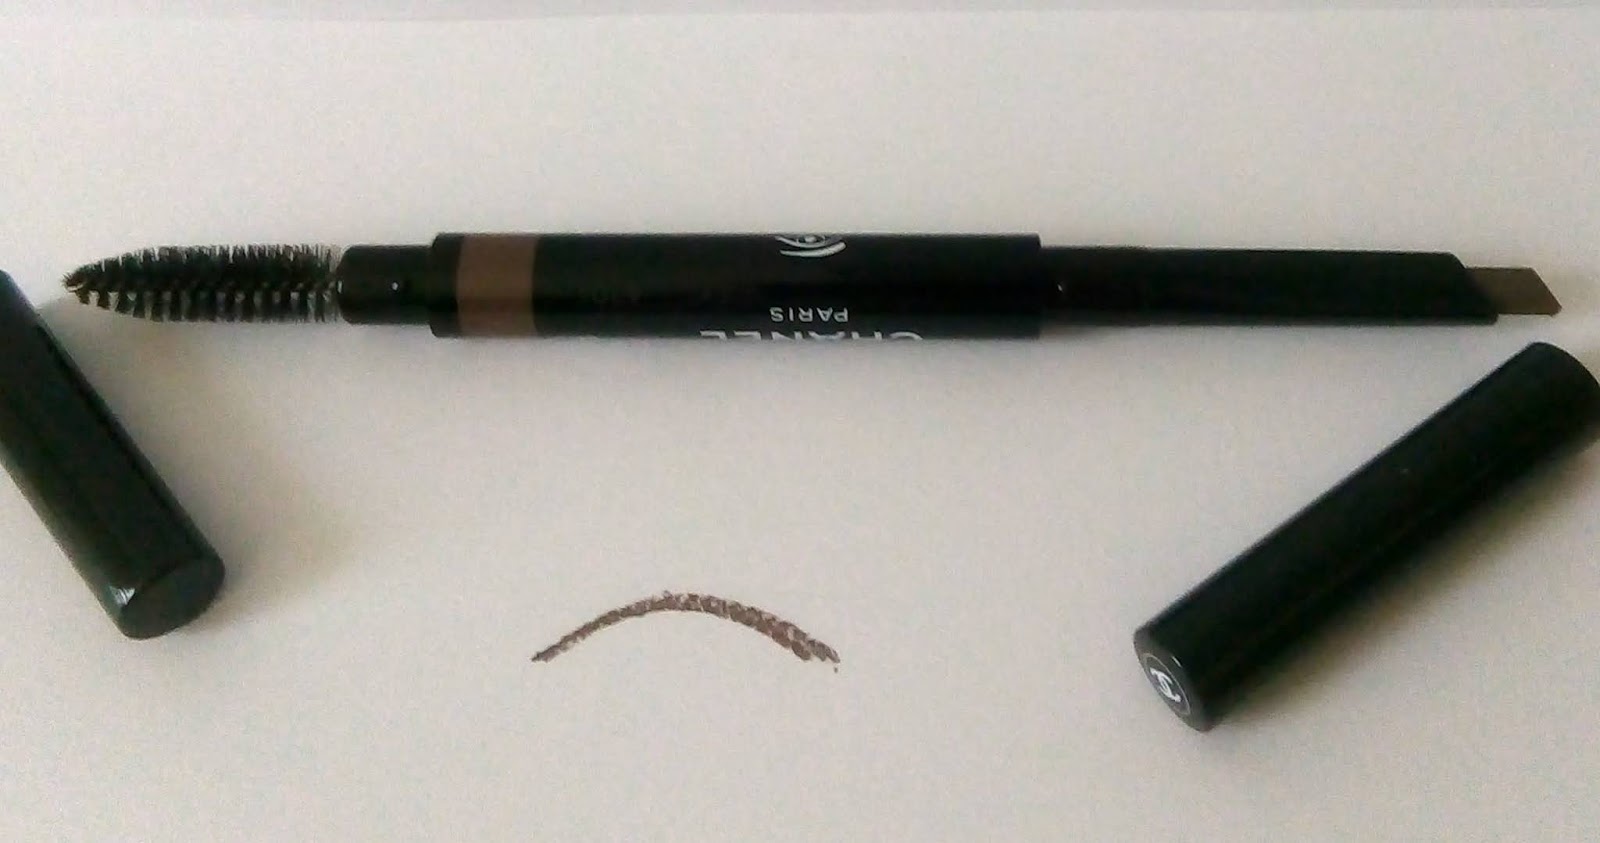 STYLO SOURCILS WATERPROOF 810 defining longwear eyebrow pencil 